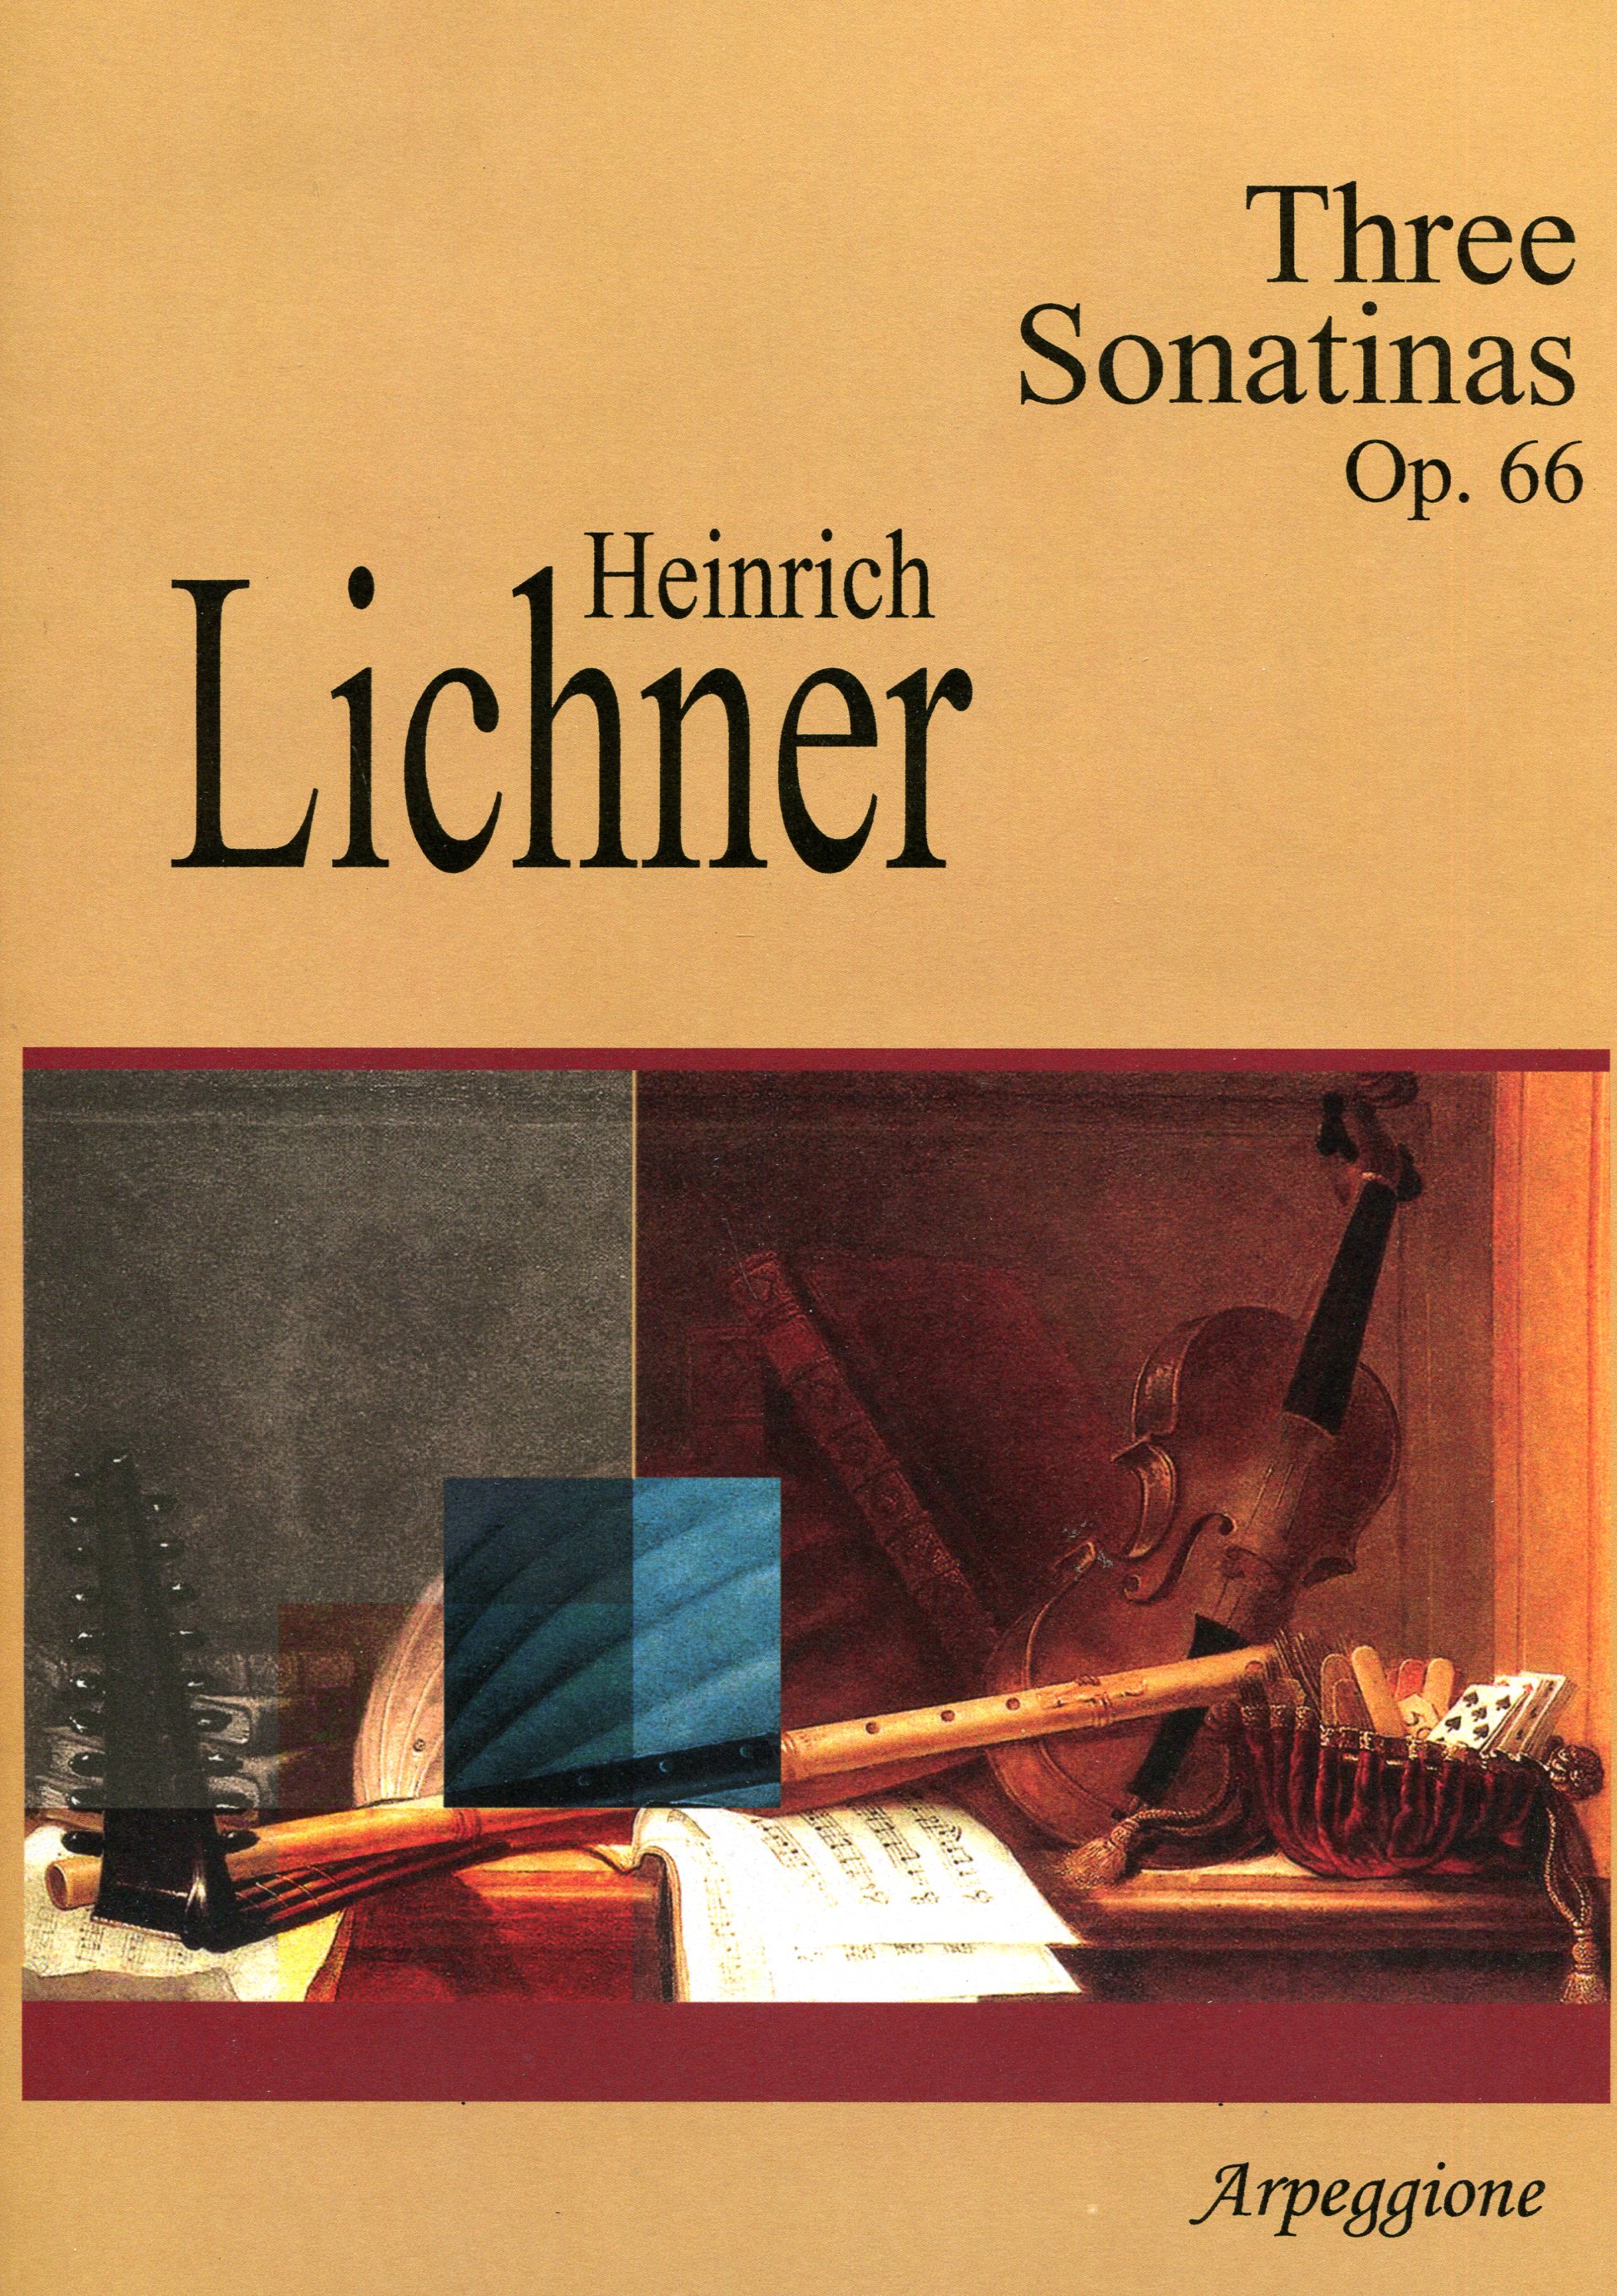 Three Sonatinas Op. 66 - Heinrich Lichner